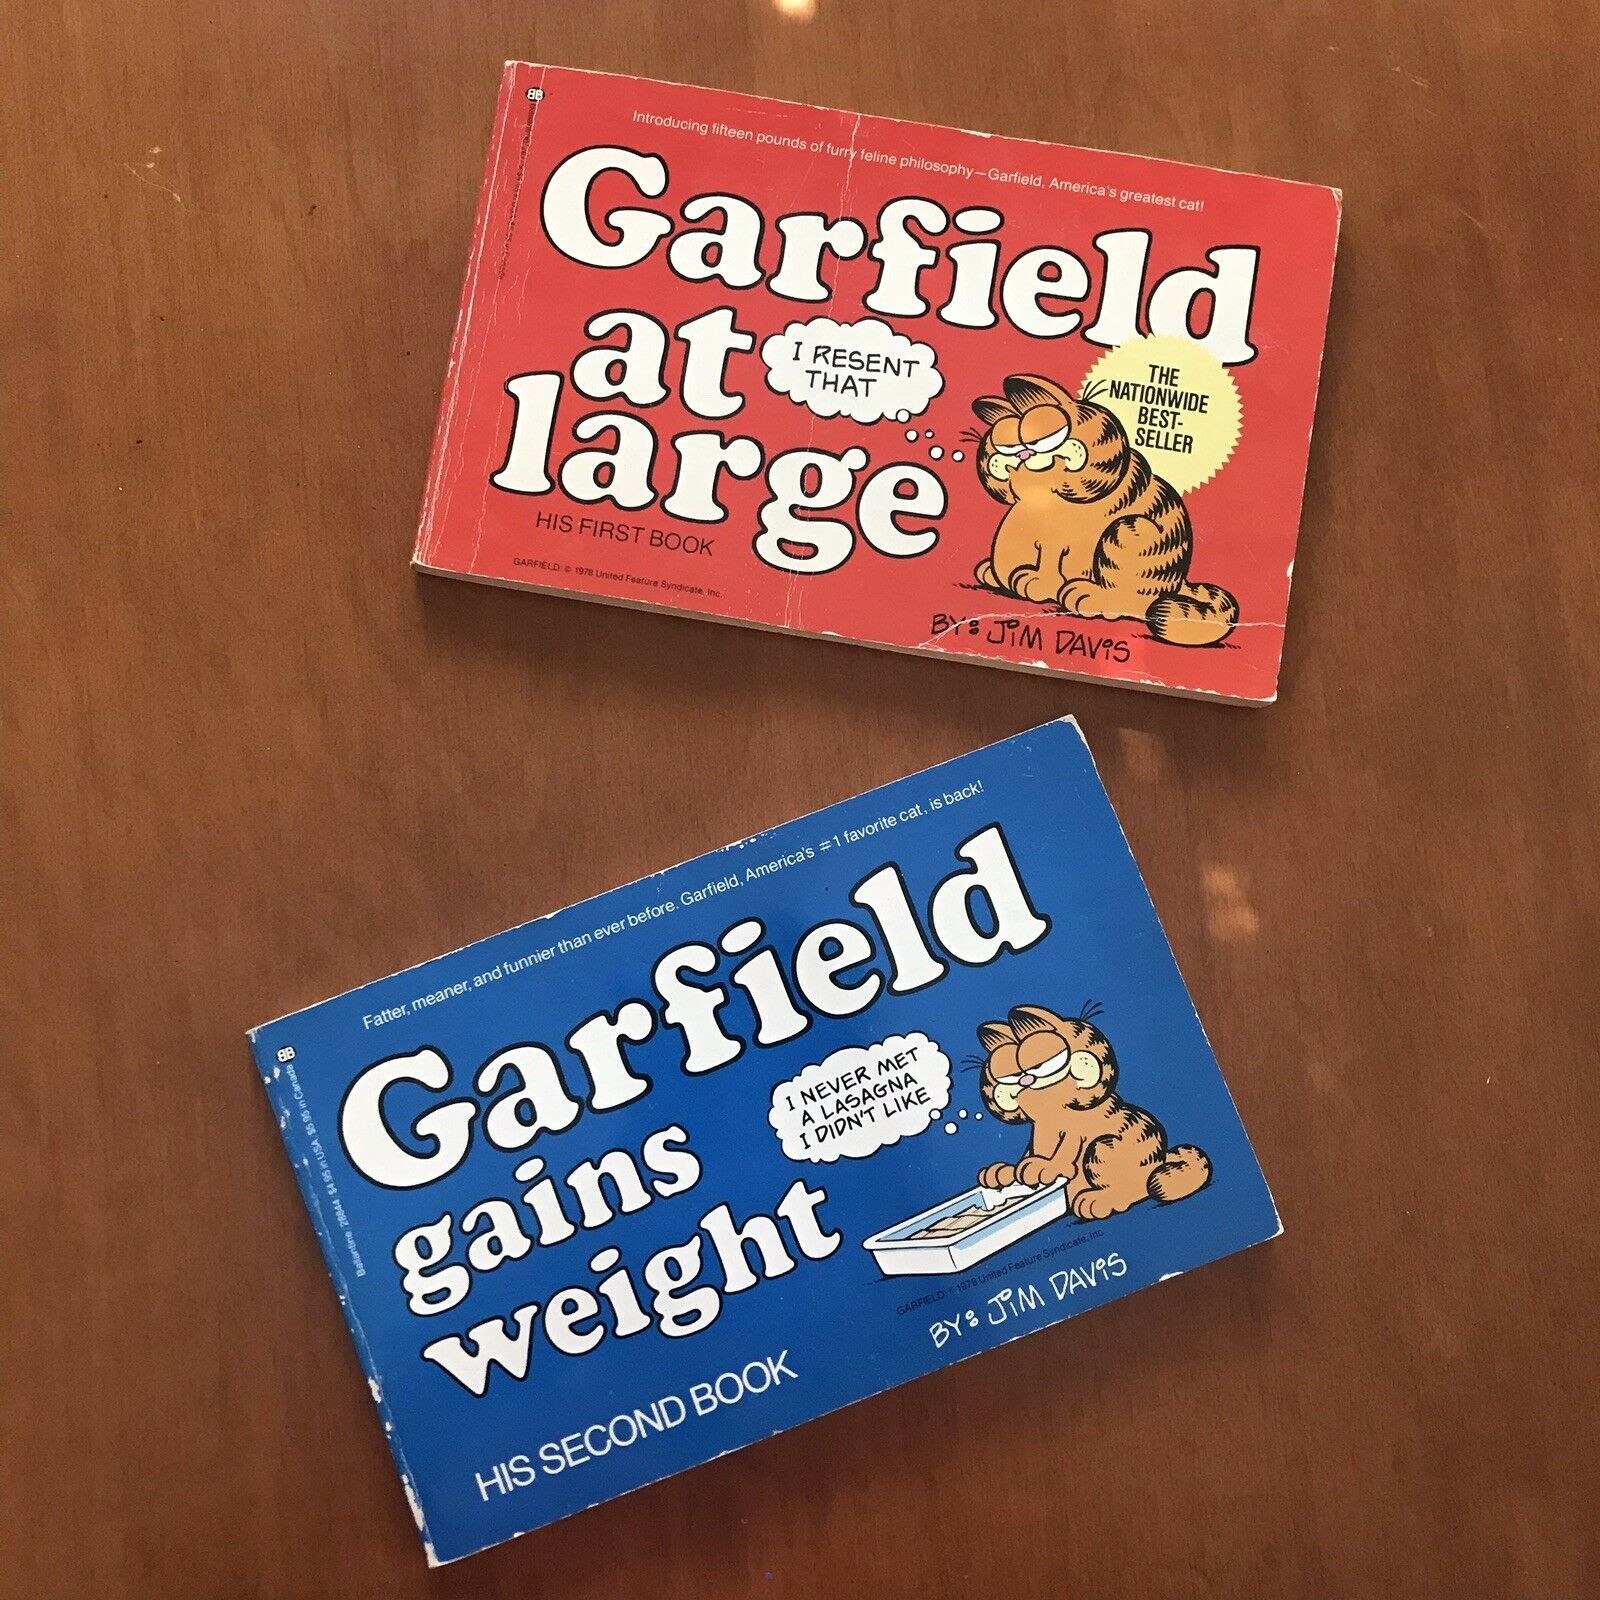 Two Garfield books